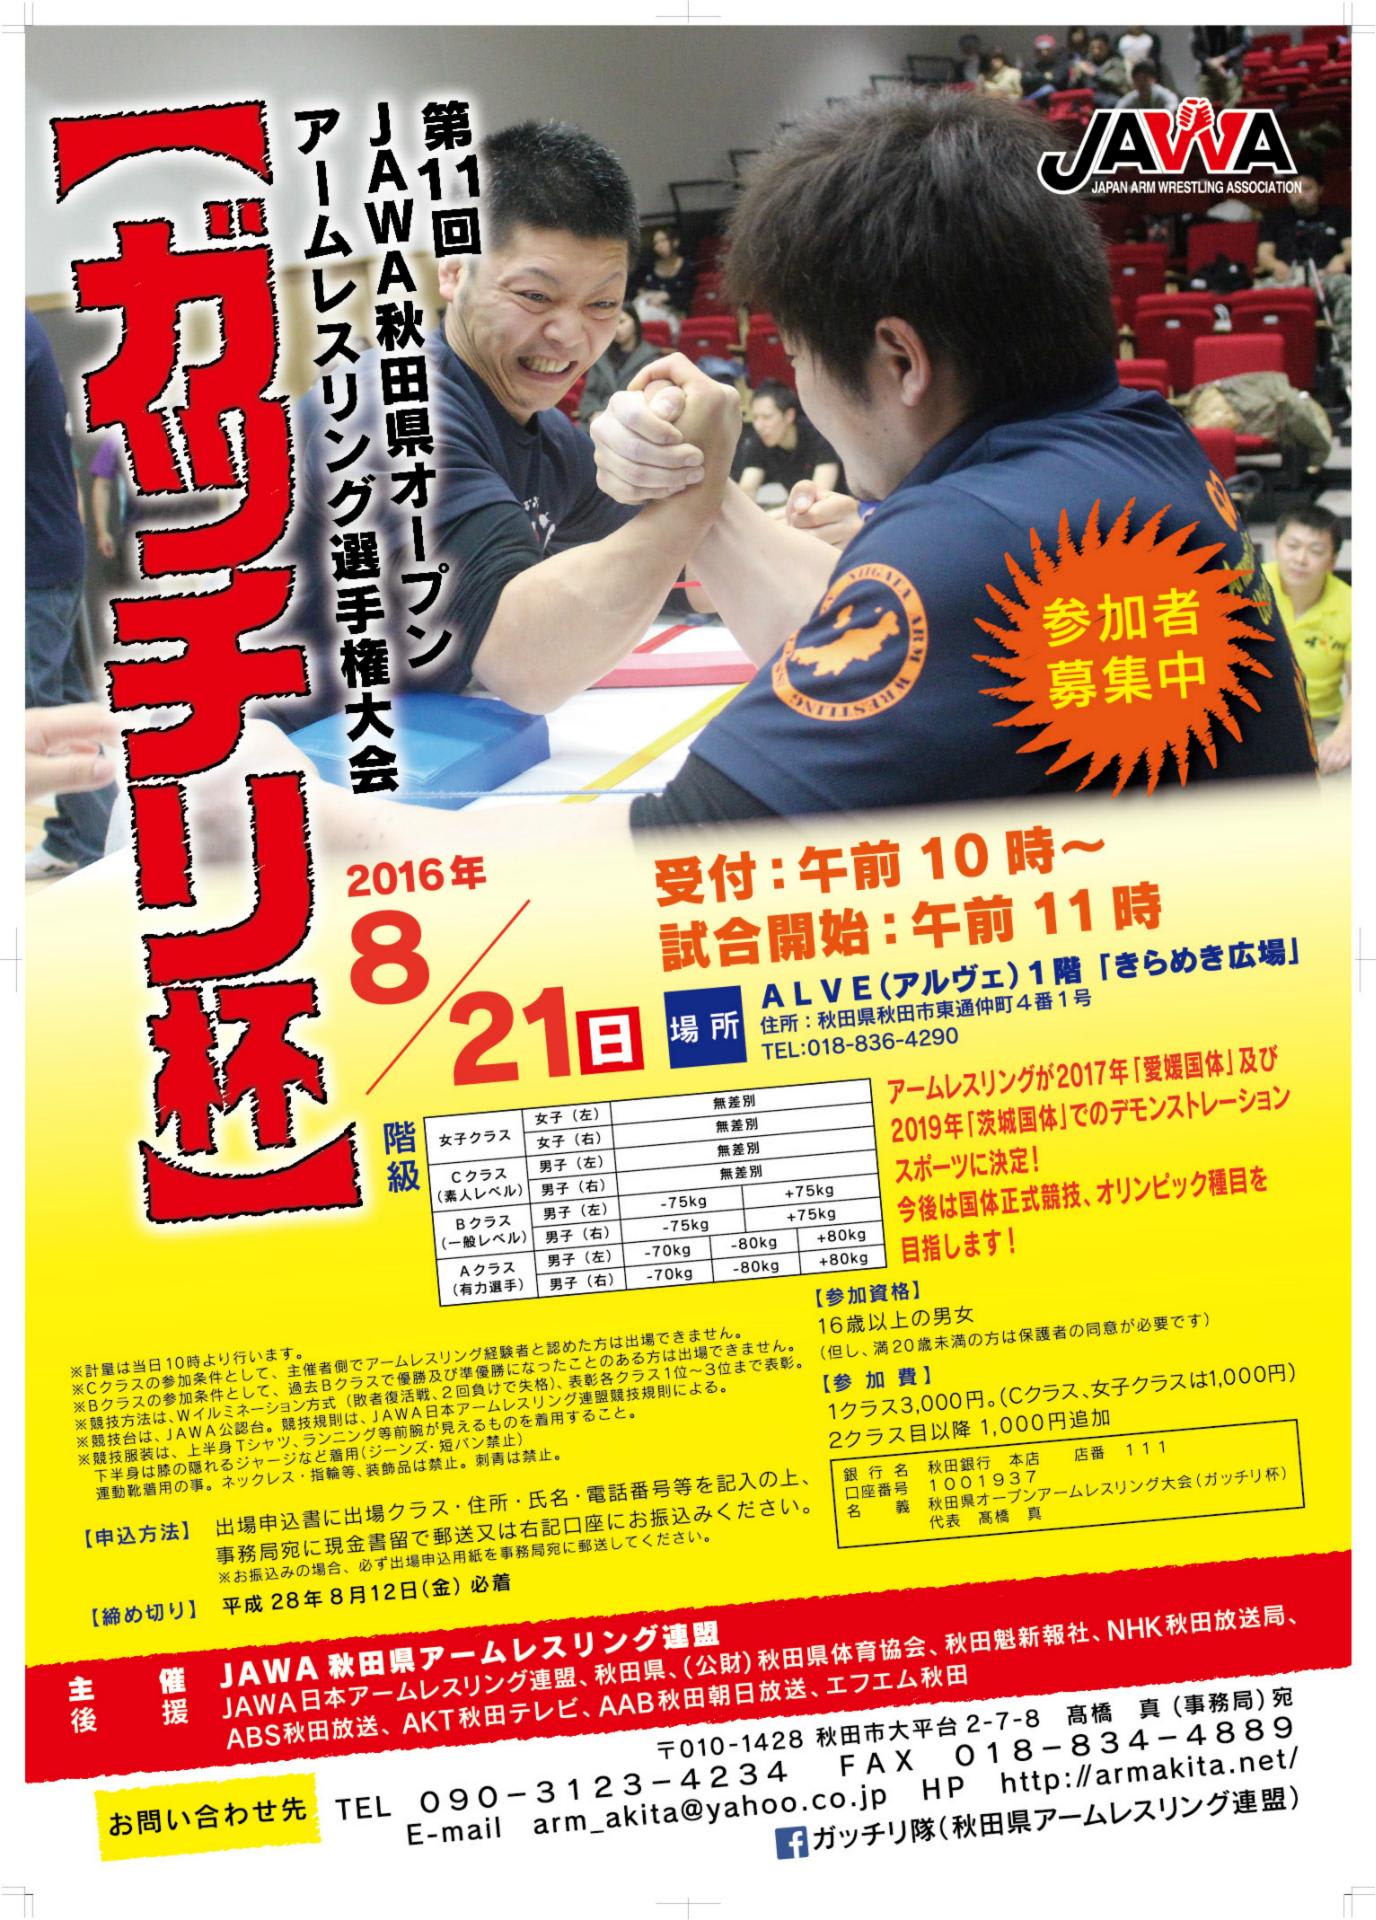 第11回秋田県オープンアームレスリング選手権大会 アーム 握力 31歳からの挑戦